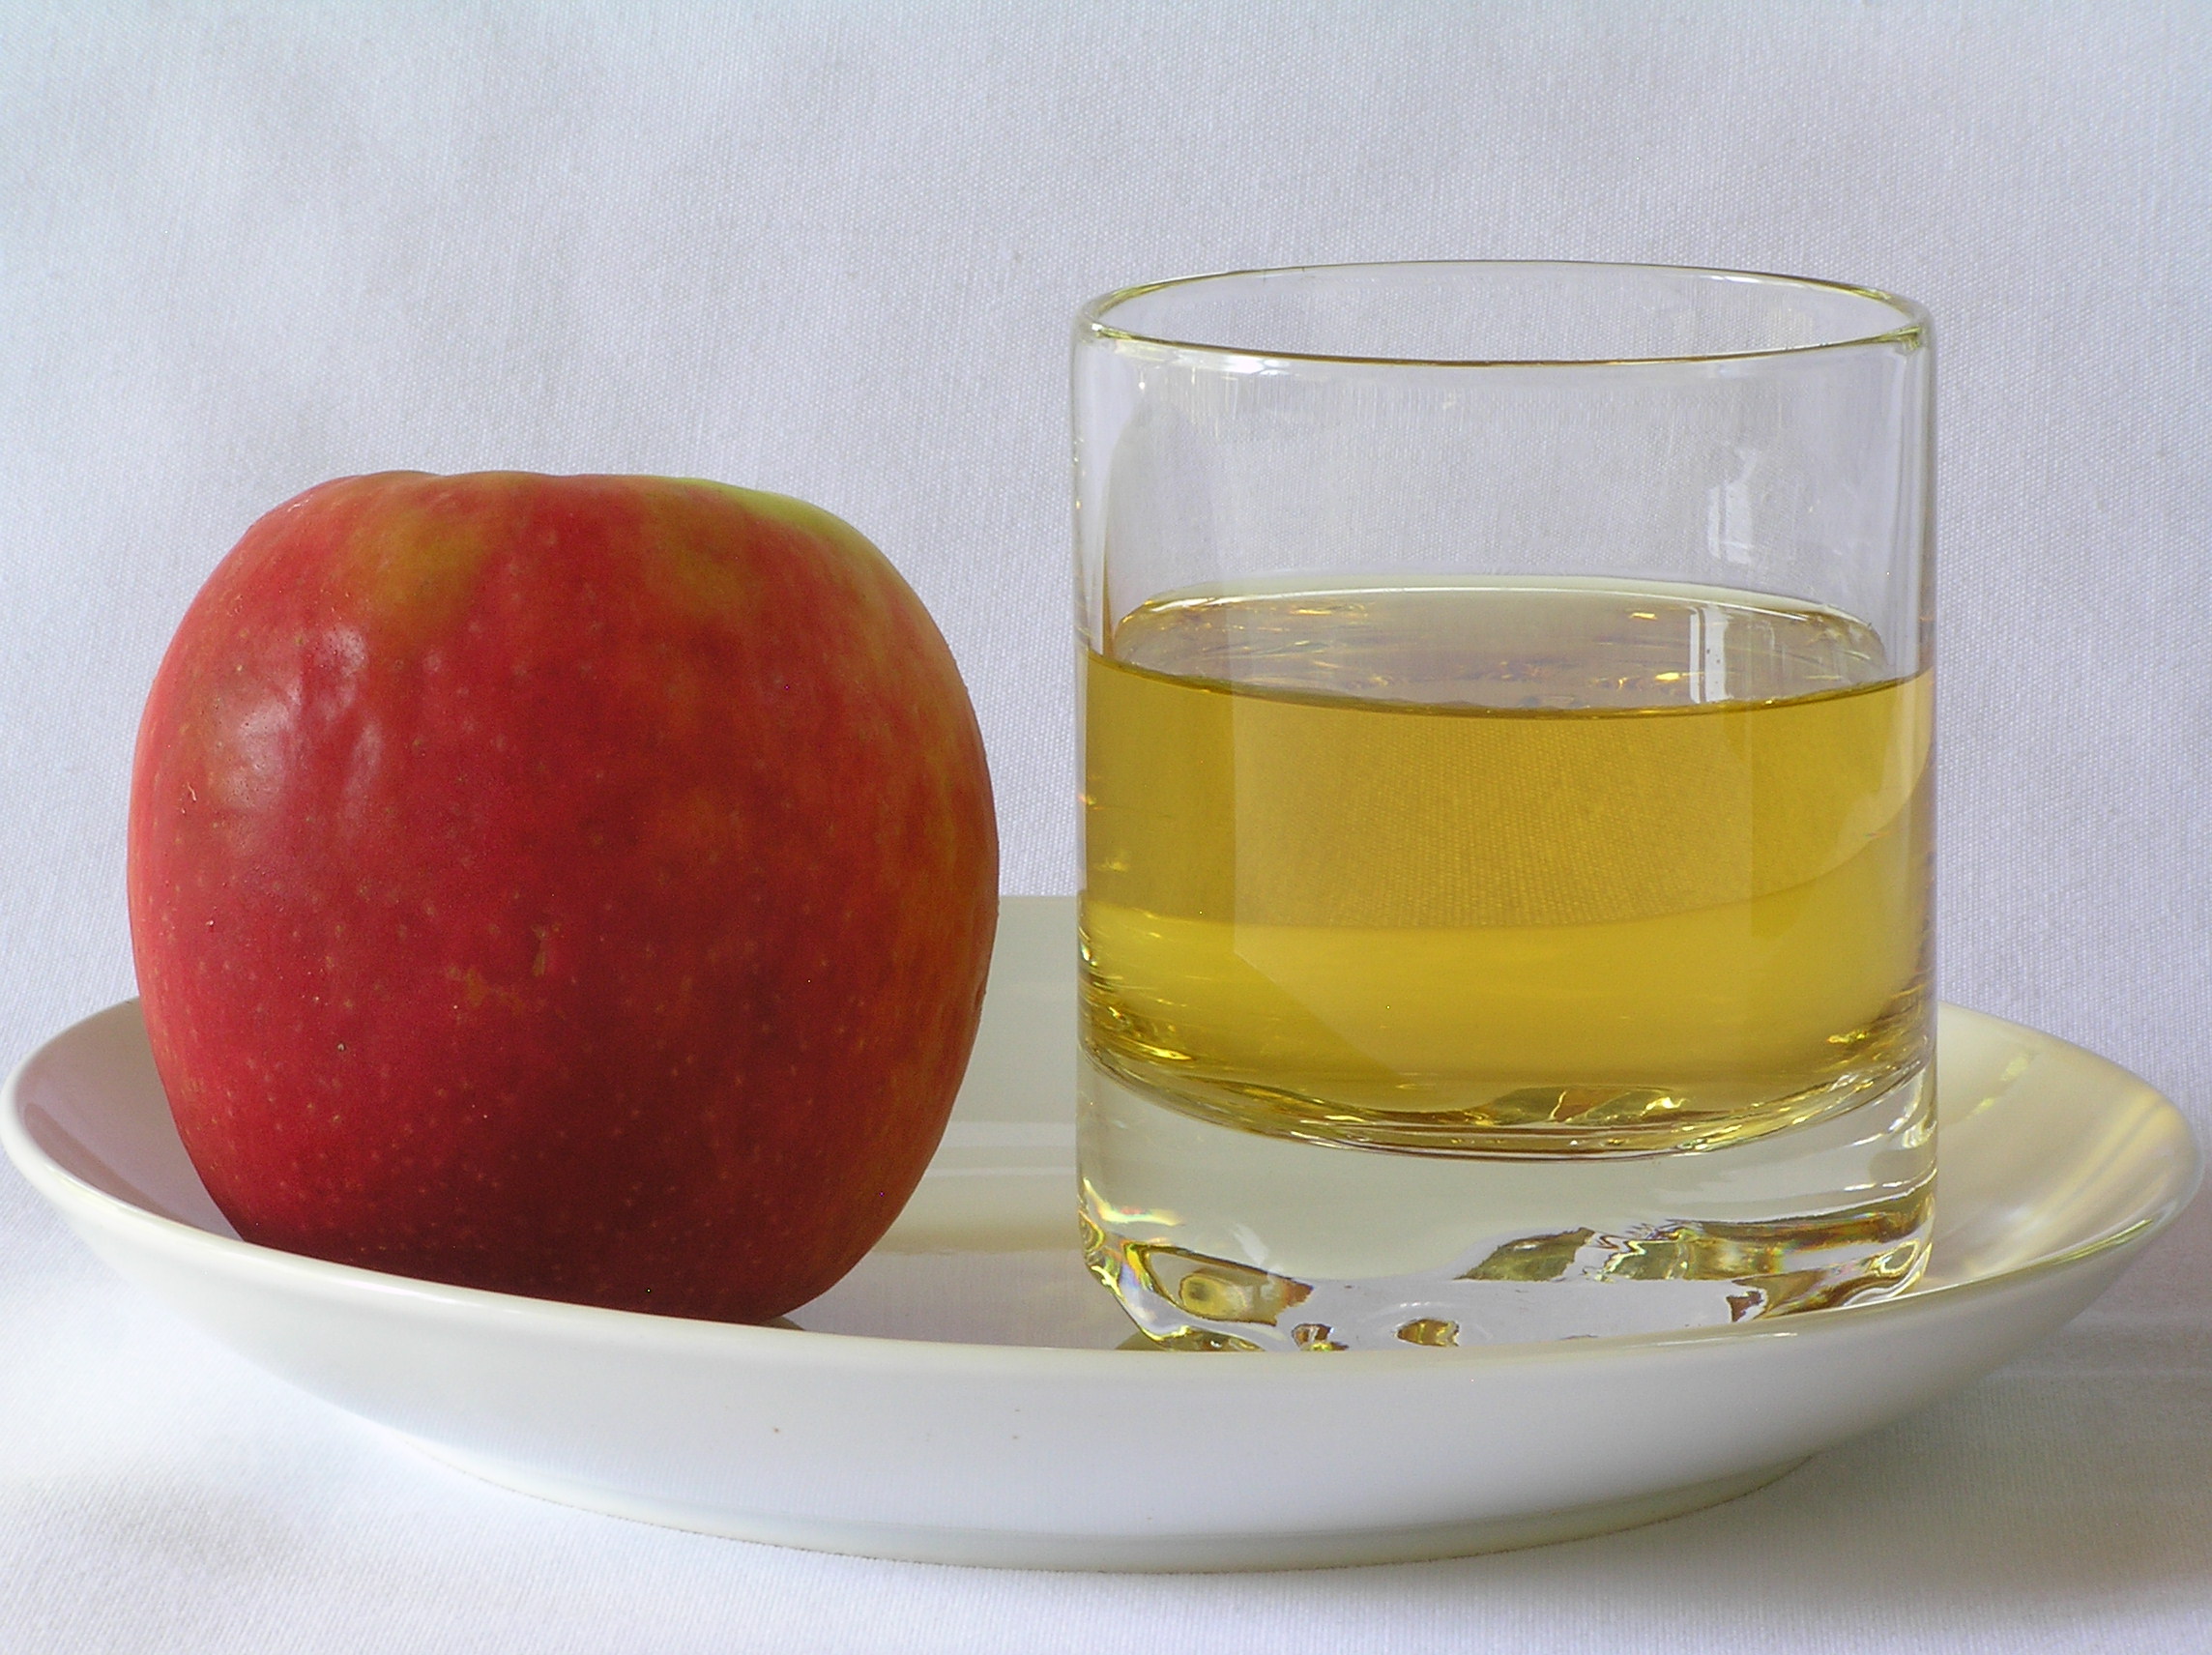 natural sugar apple juice